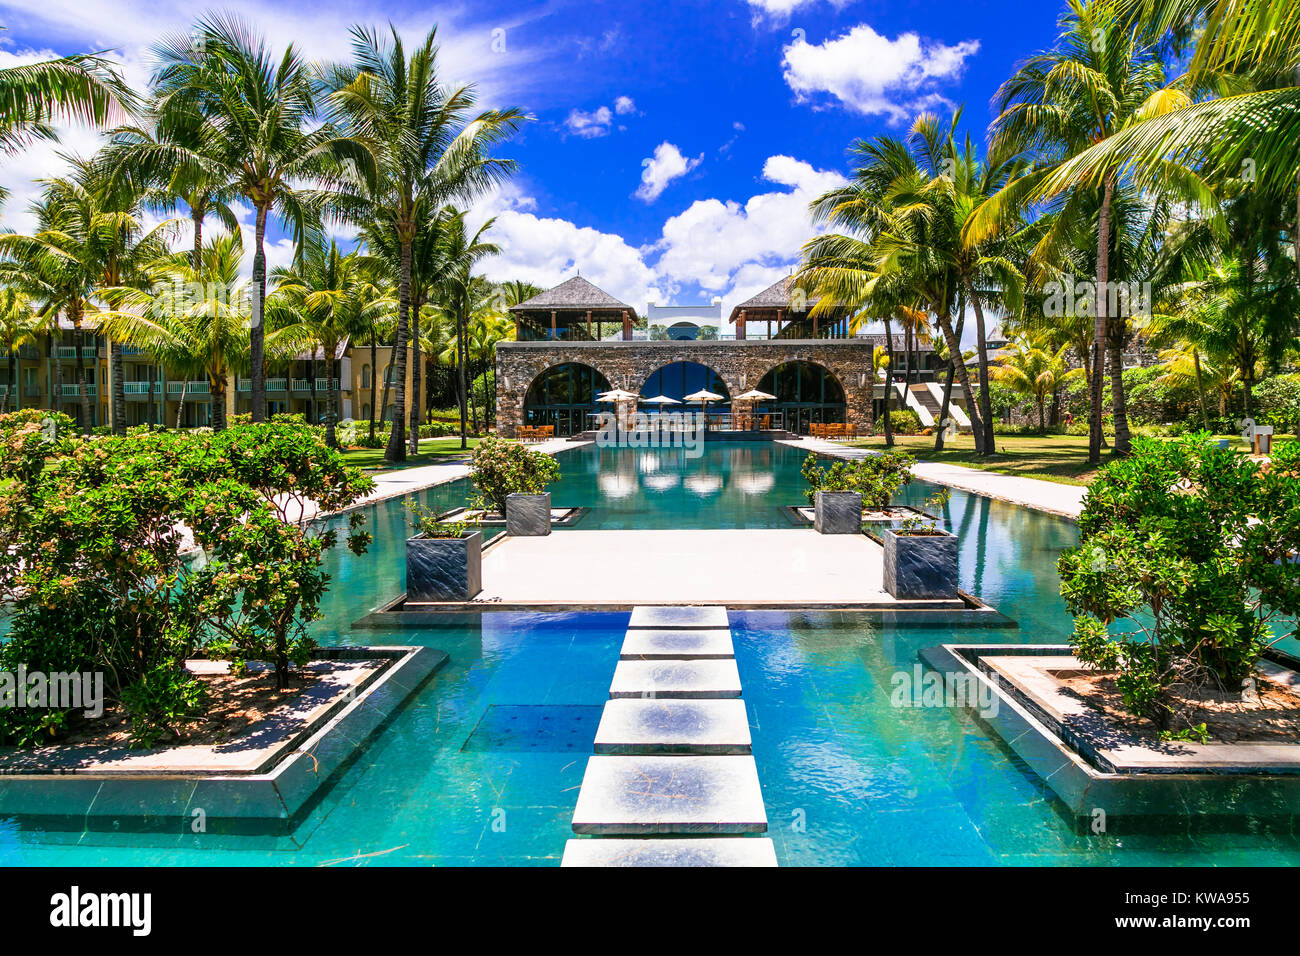 Complexe de luxe situé dans un paradis tropical, l'île Maurice. Banque D'Images